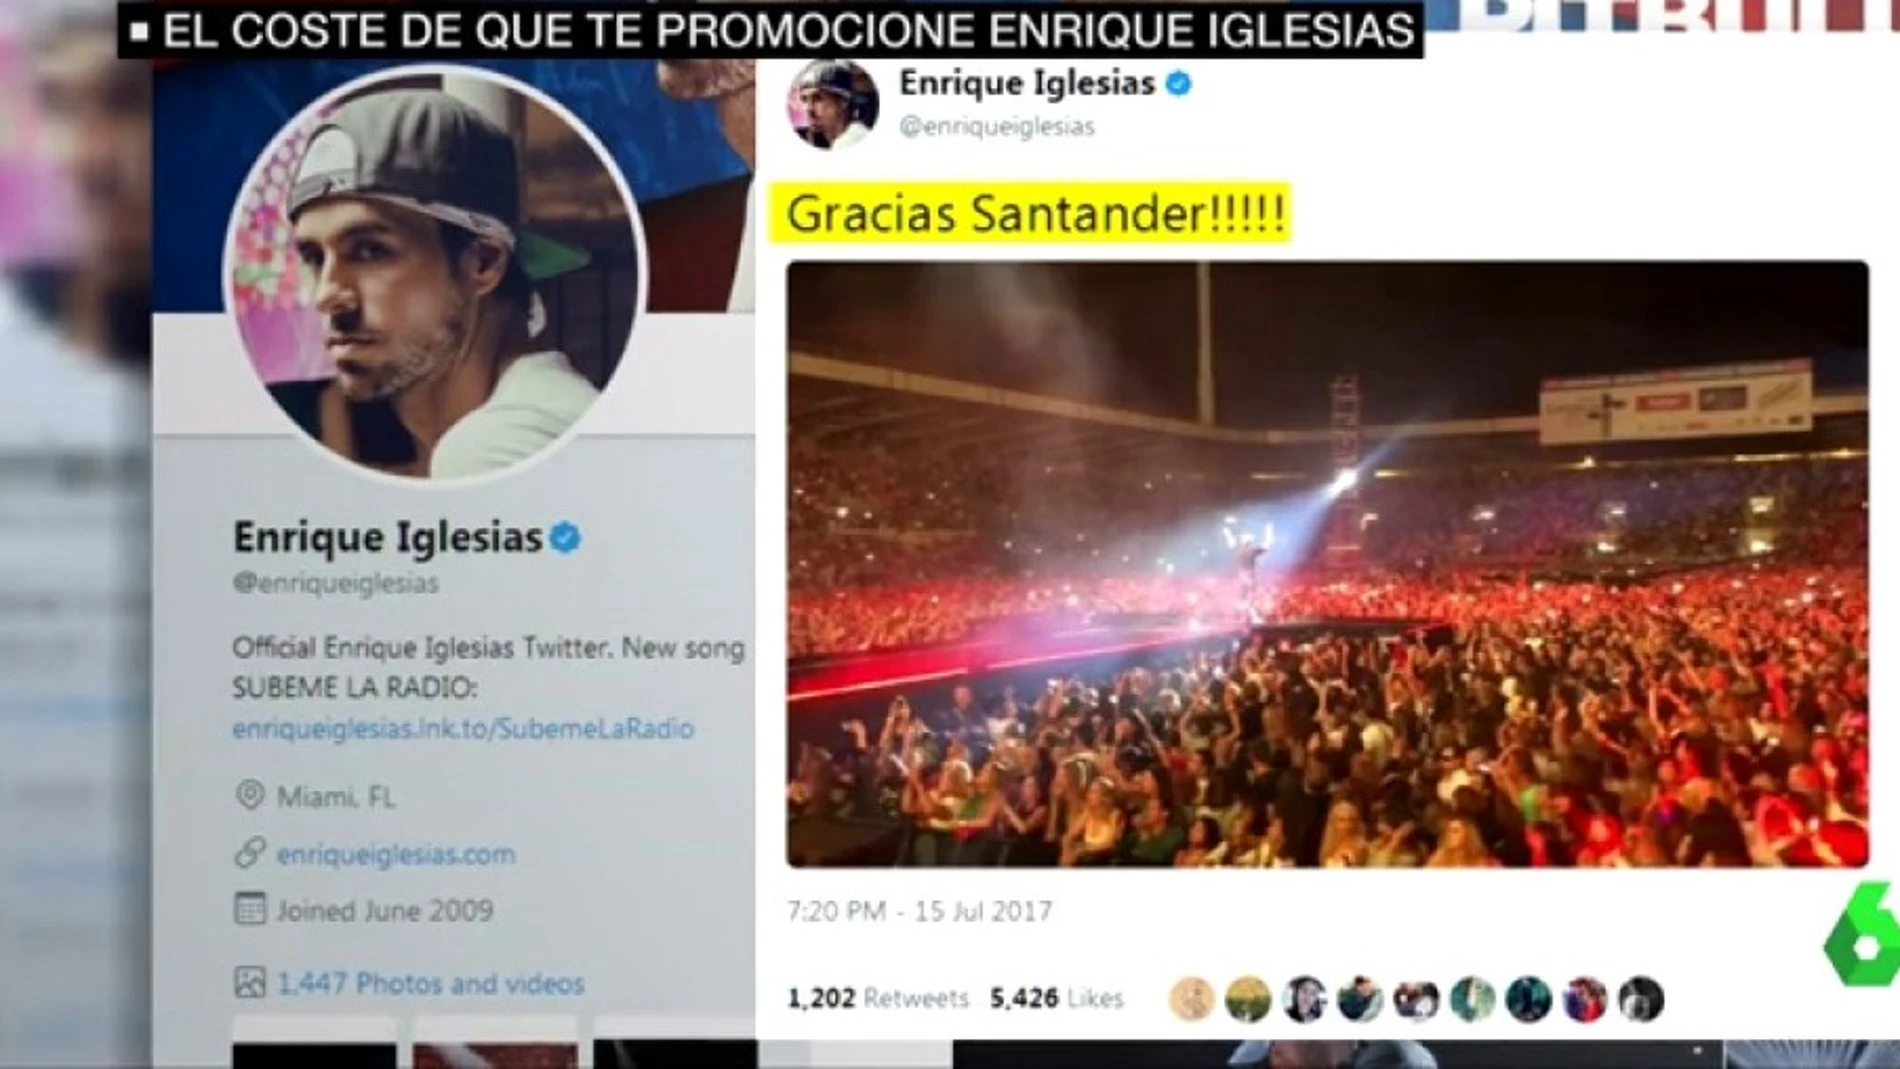 Twitter de Enrique Iglesias